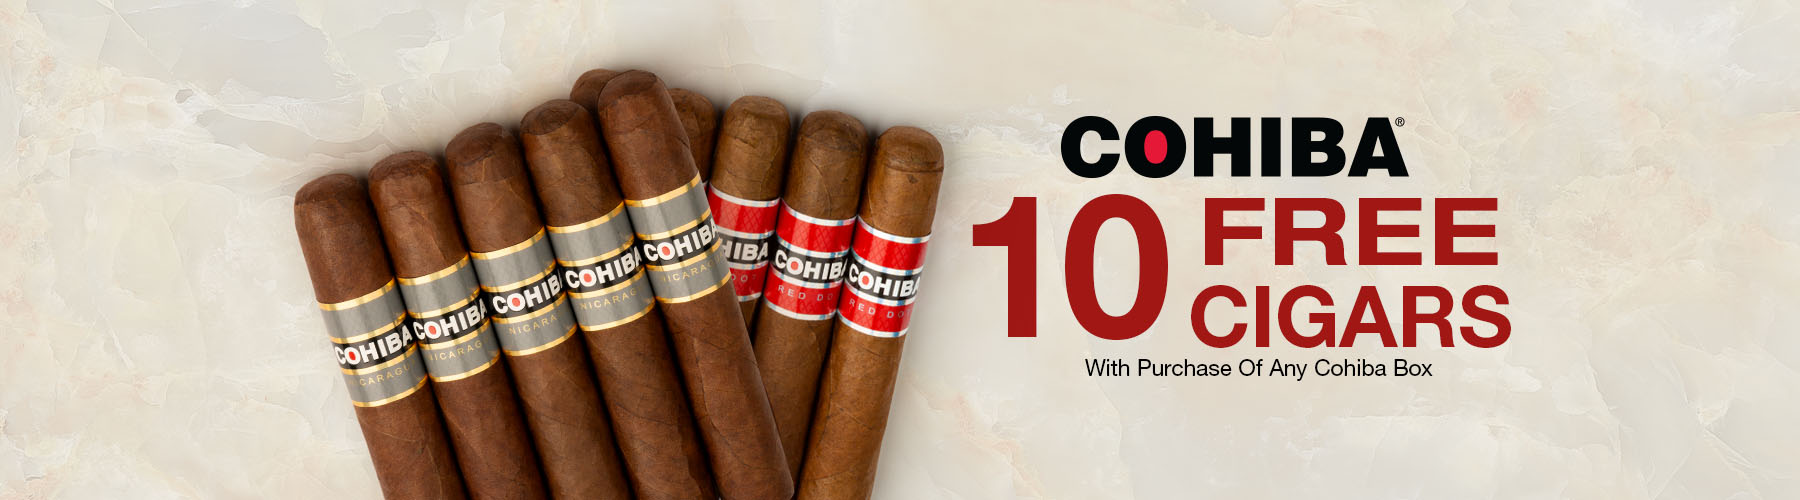 10 Cigars free with Cohiba! $161.40 value